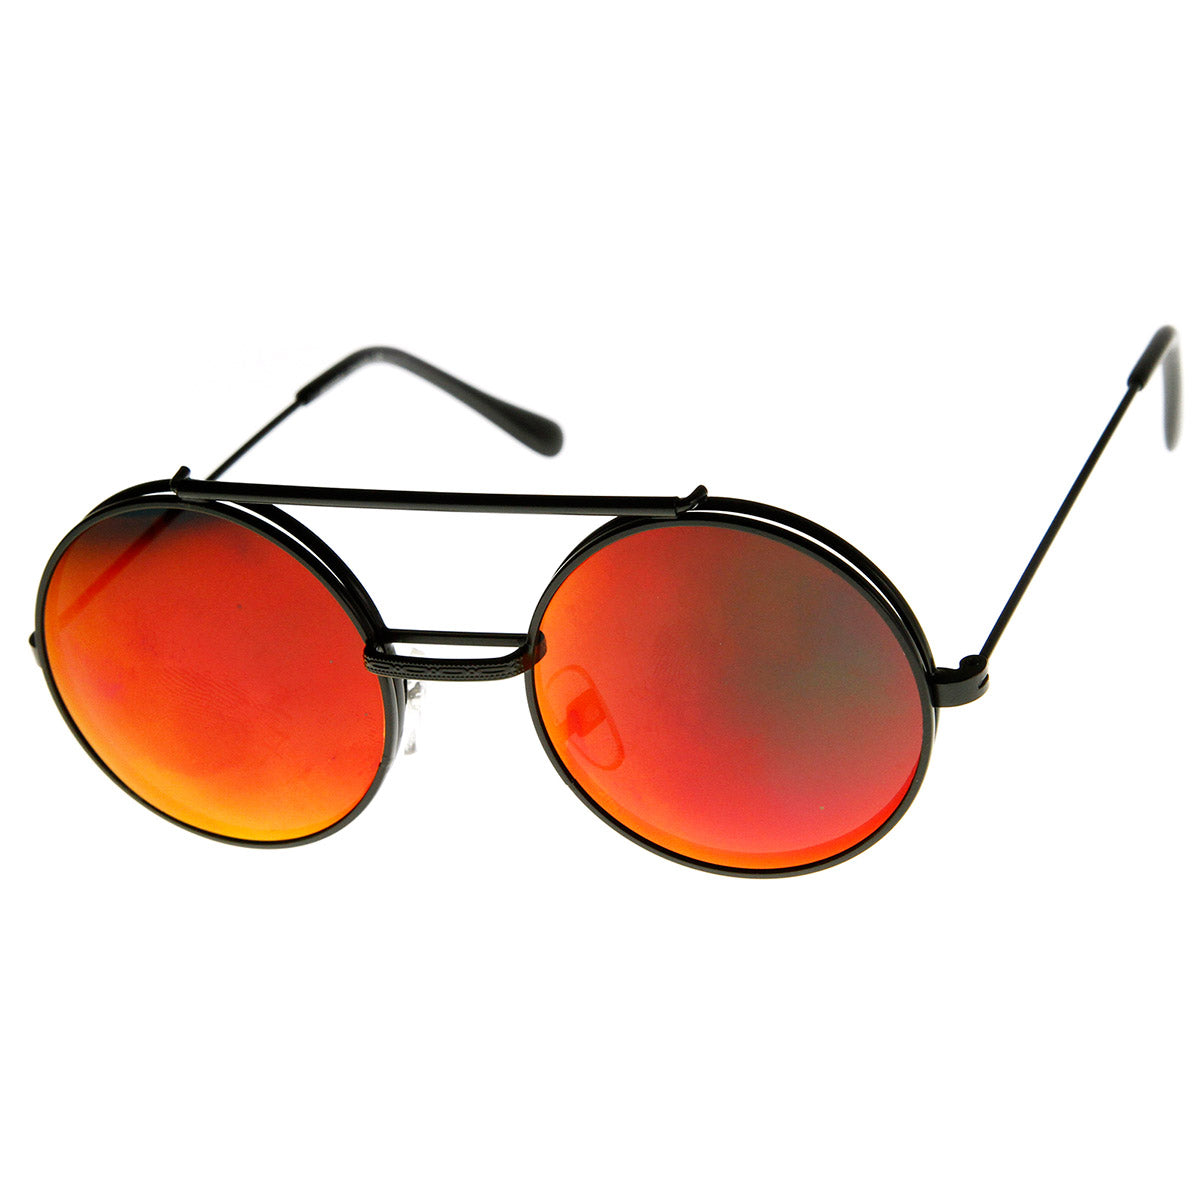 Share 250+ round mirrored sunglasses latest